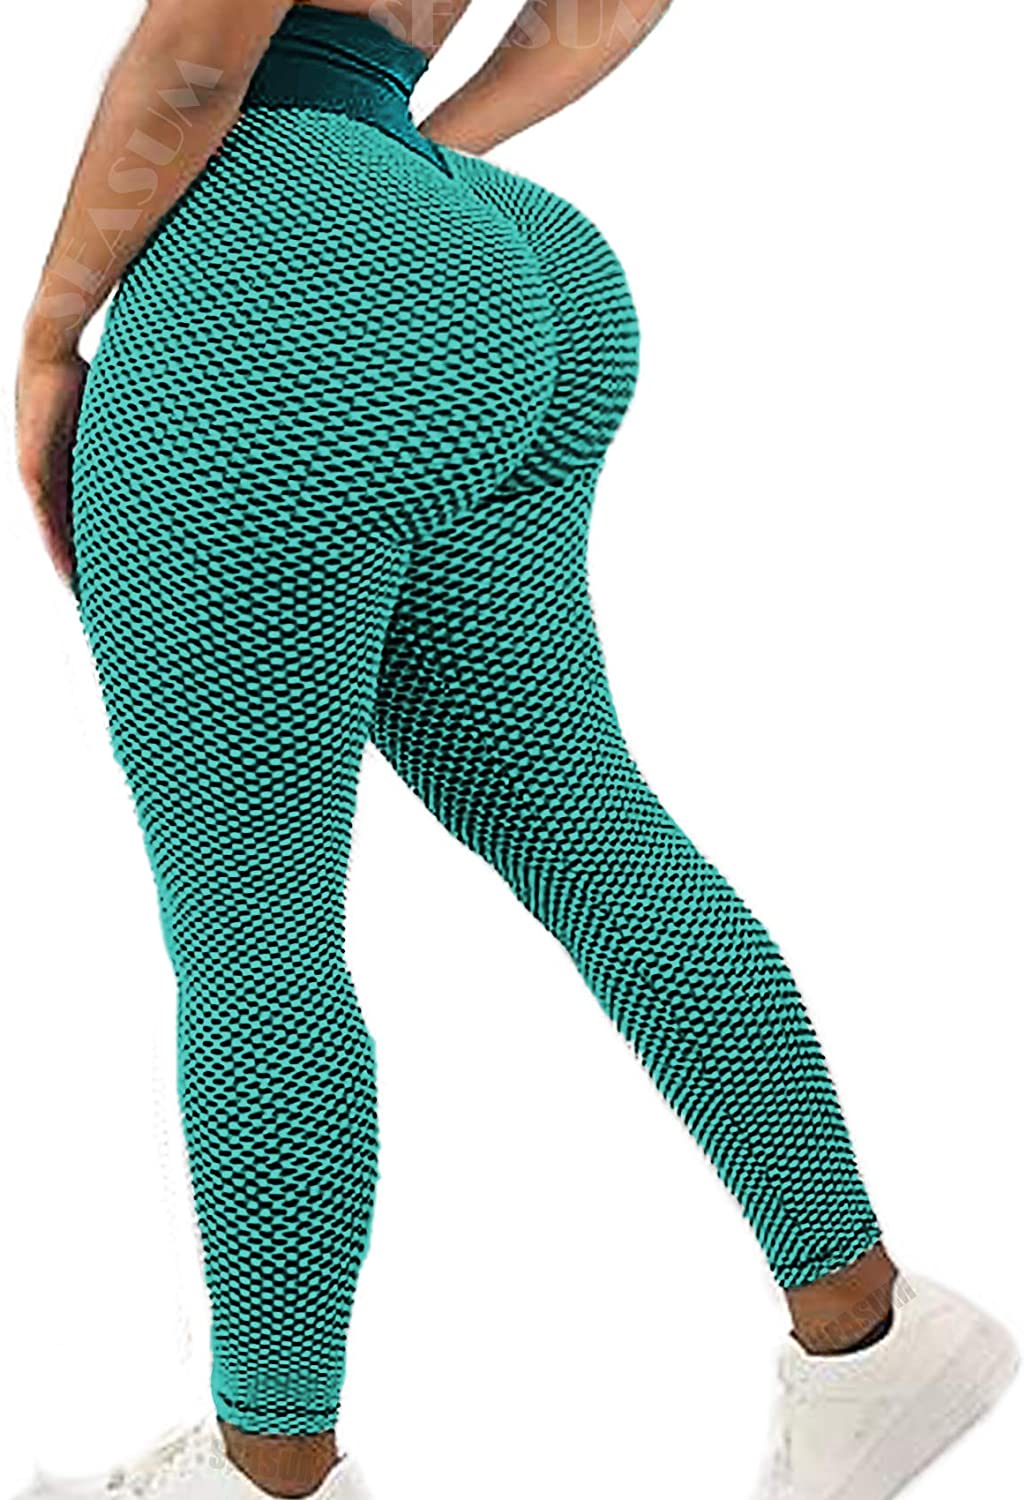 High Waisted Yoga Pants for Women Butt Lift Ruched Scrunch Butt